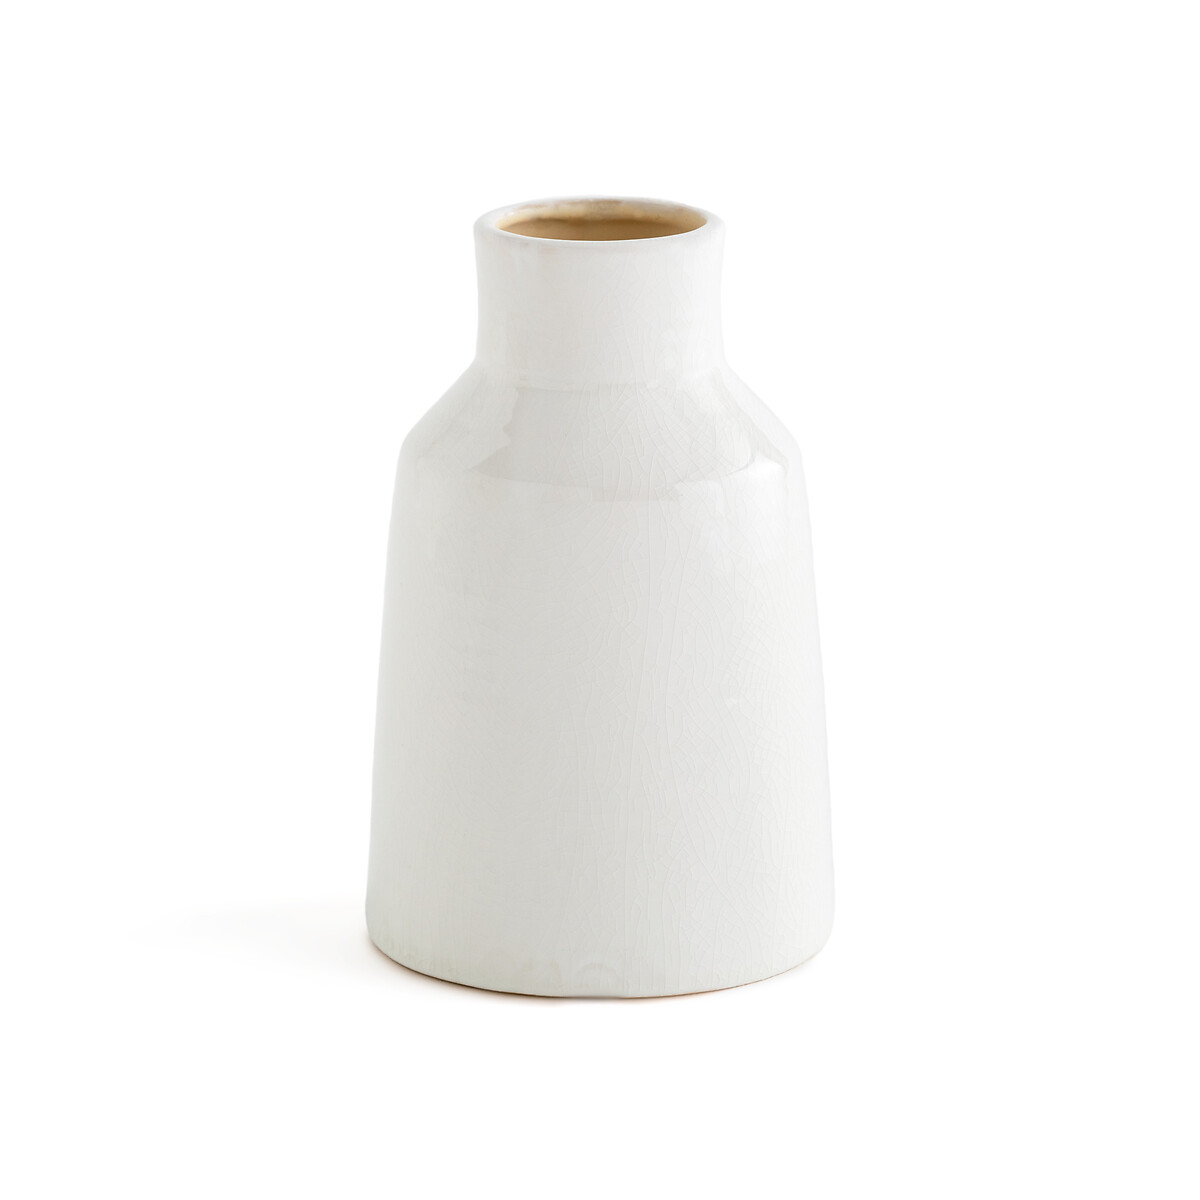 ваза из керамики маленькая модель almada единый размер бежевый Ваза из керамики Pastela единый размер белый